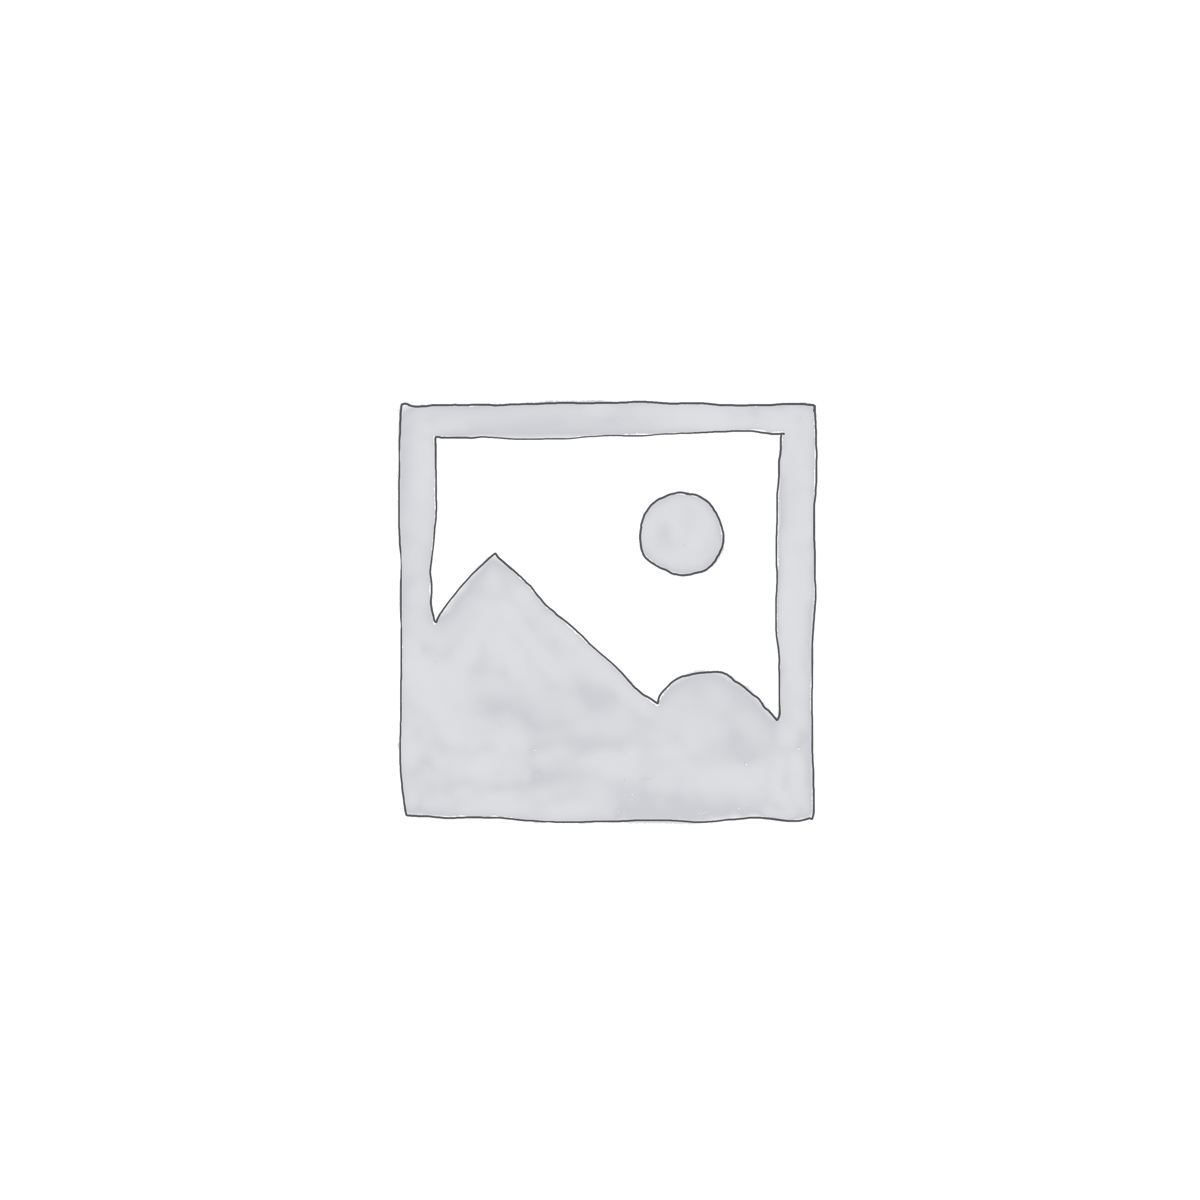 紅米 Redmi Note 8 Pro 6GB+64GB/128GB 6.53” Black/Blue/Green/White